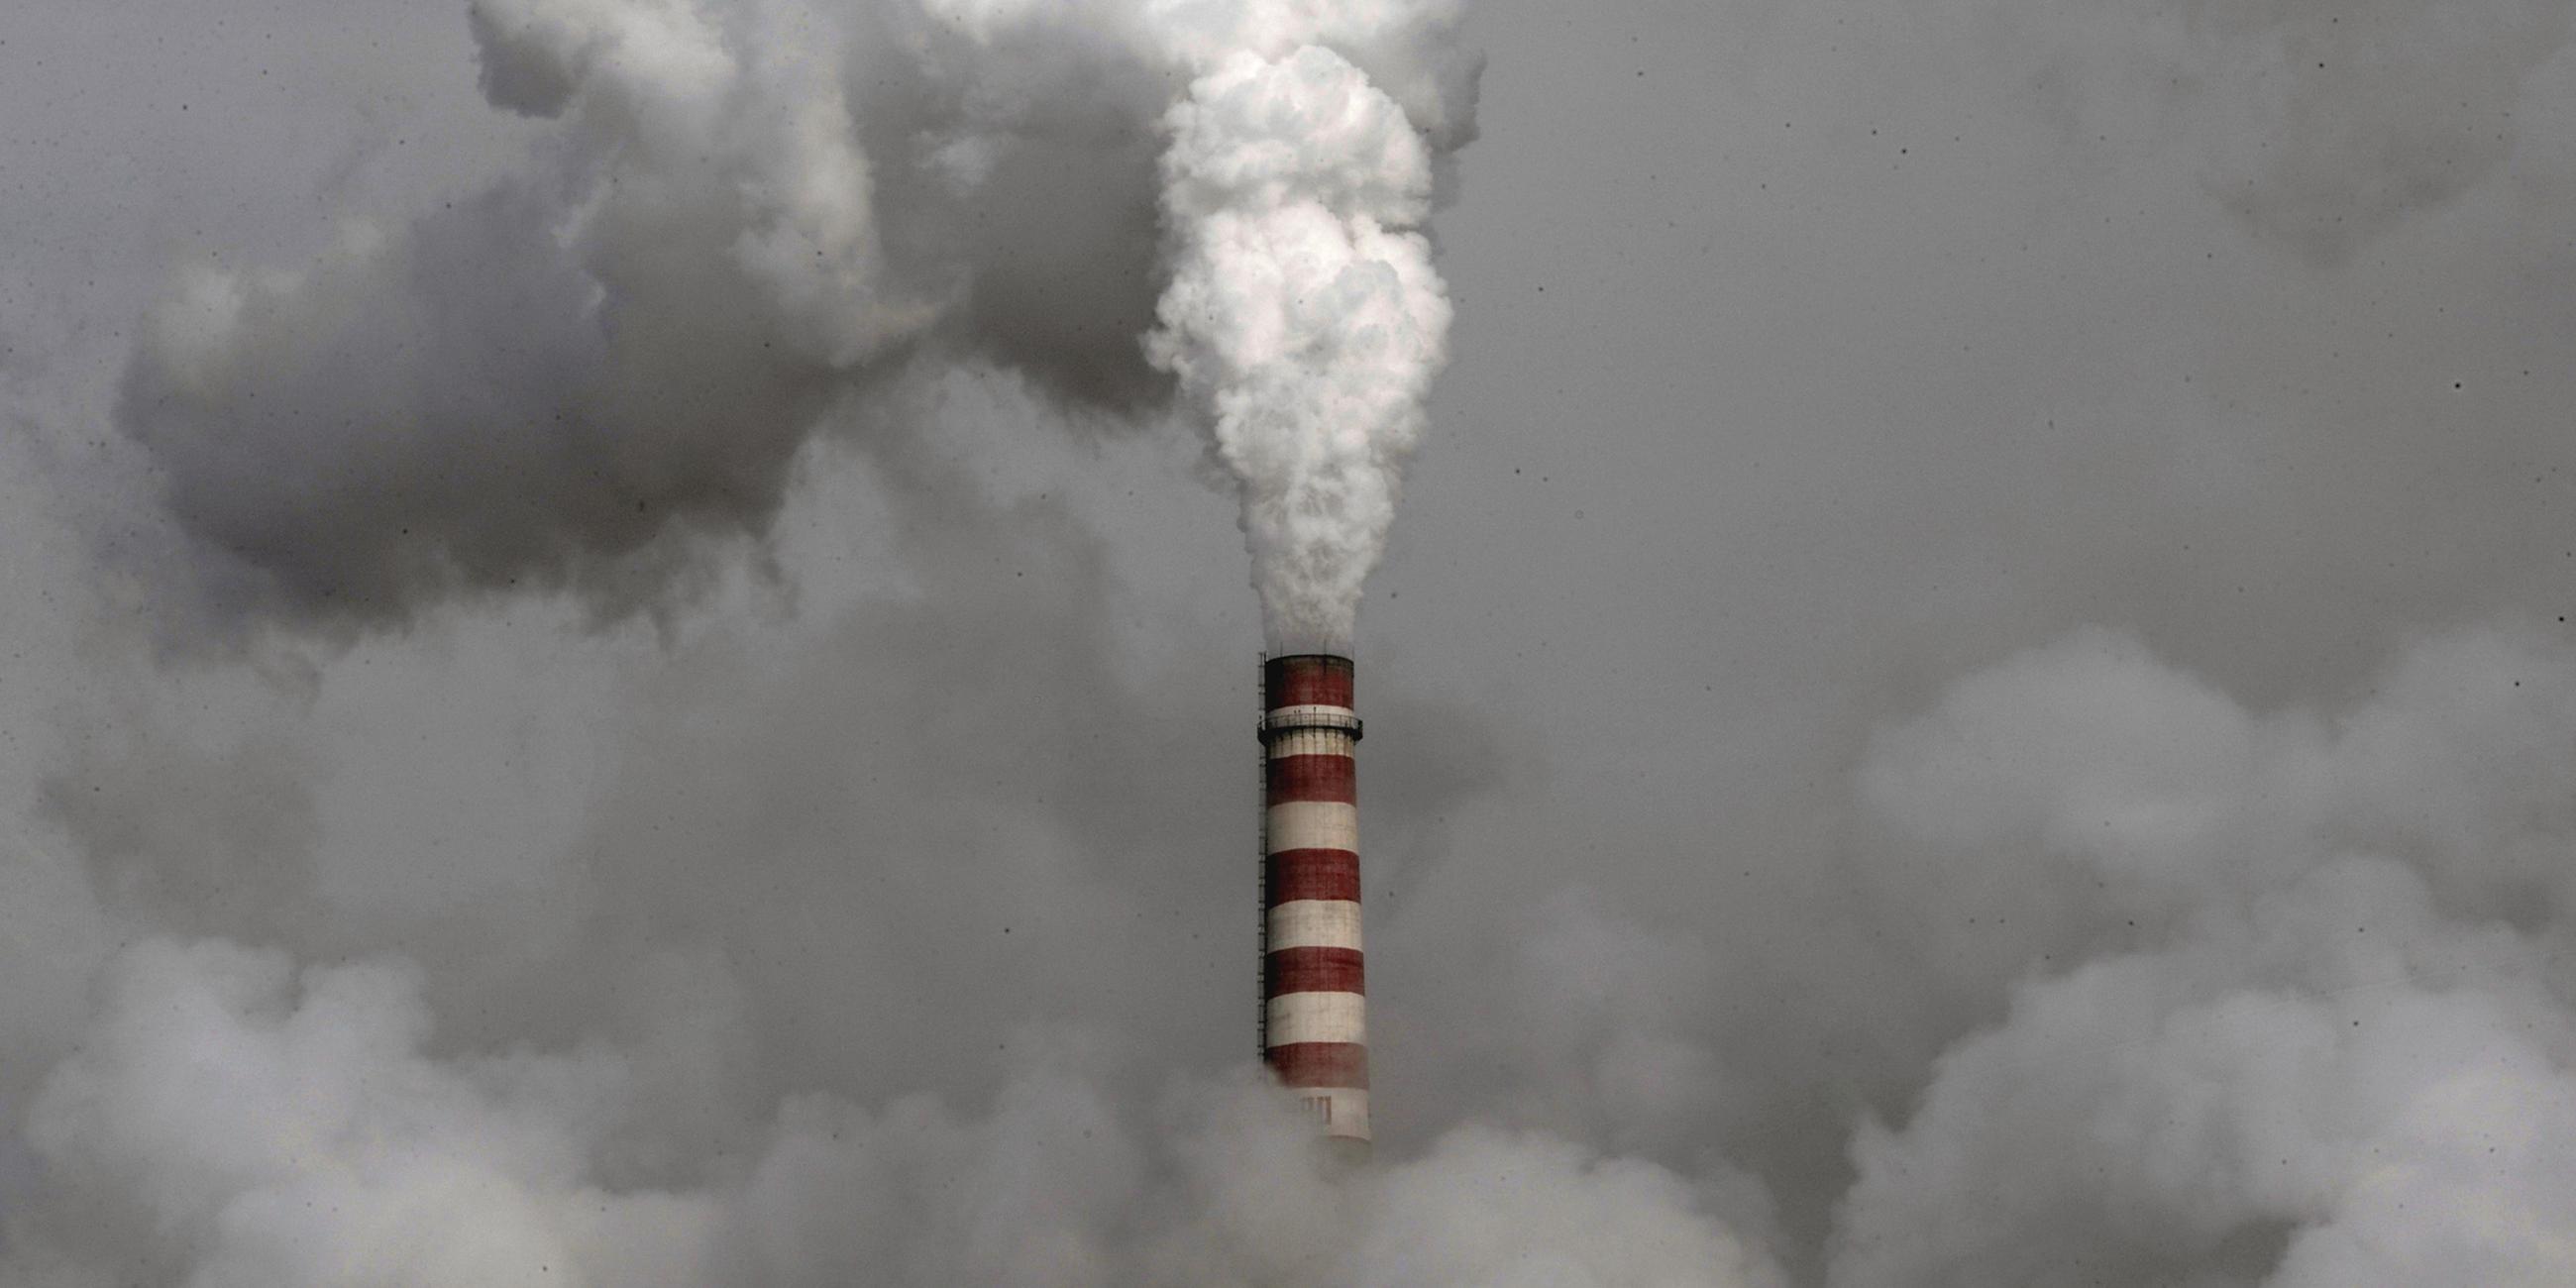 Archiv: Rauch steigt aus einem Schornstein eines Kohlekraftwerks